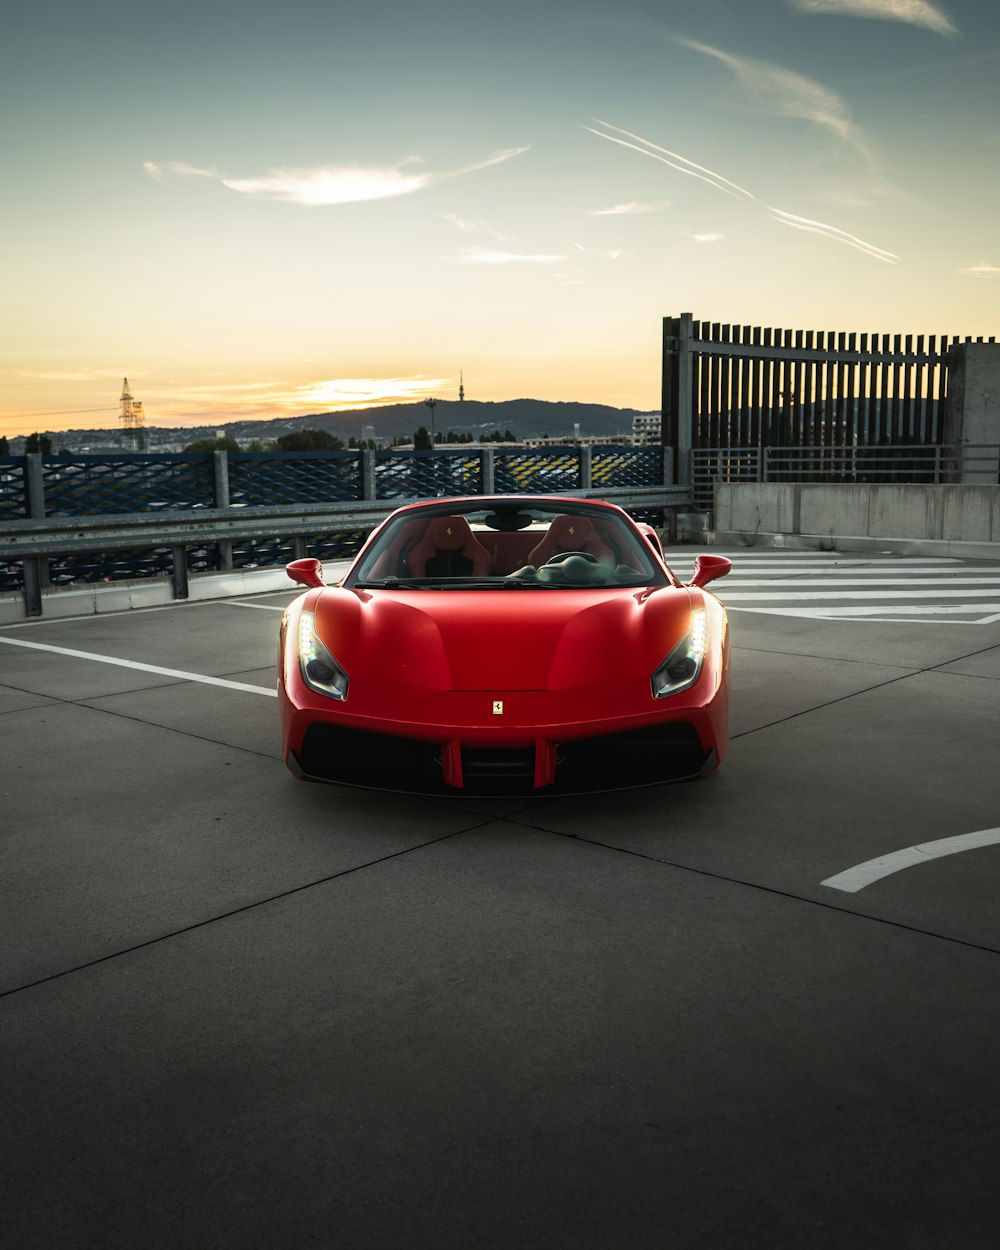 Ferrari voiture de sport rouge sur la route pendant la journée